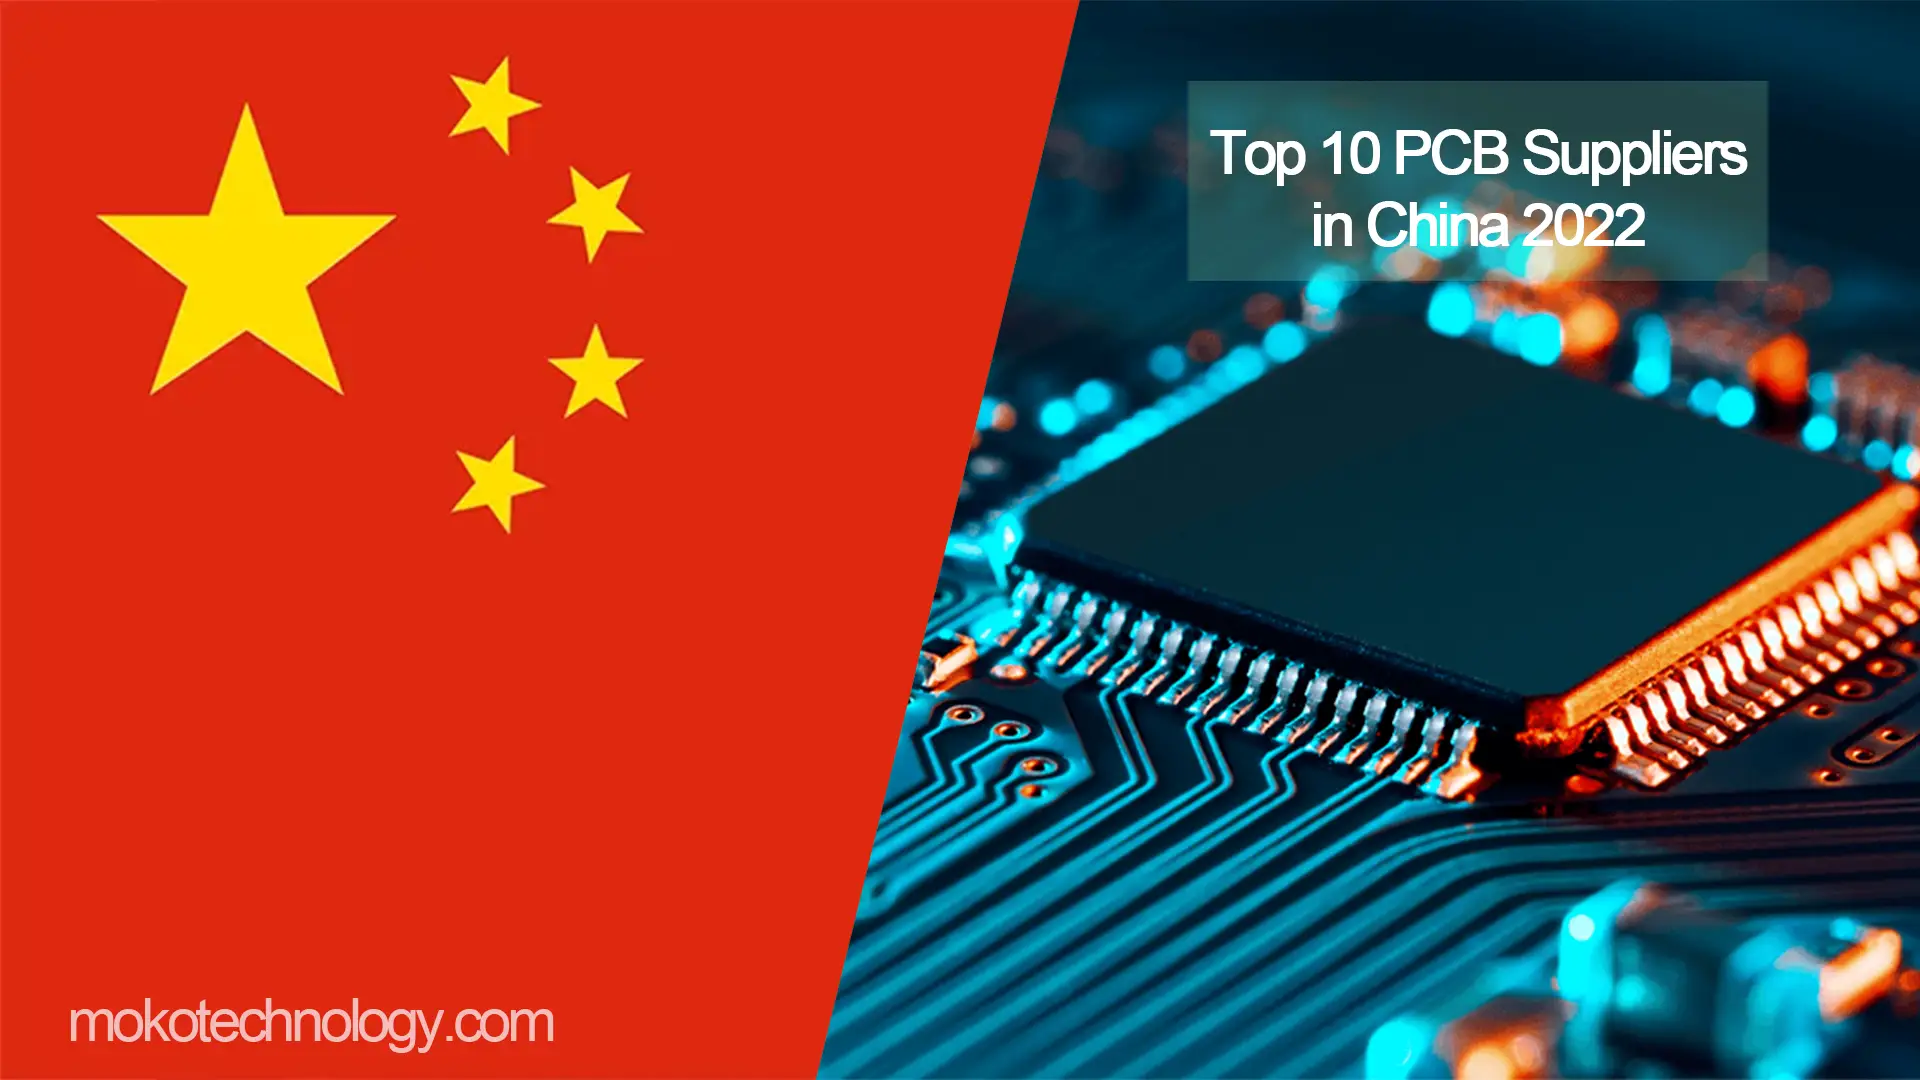 PCB-leveranciers in China